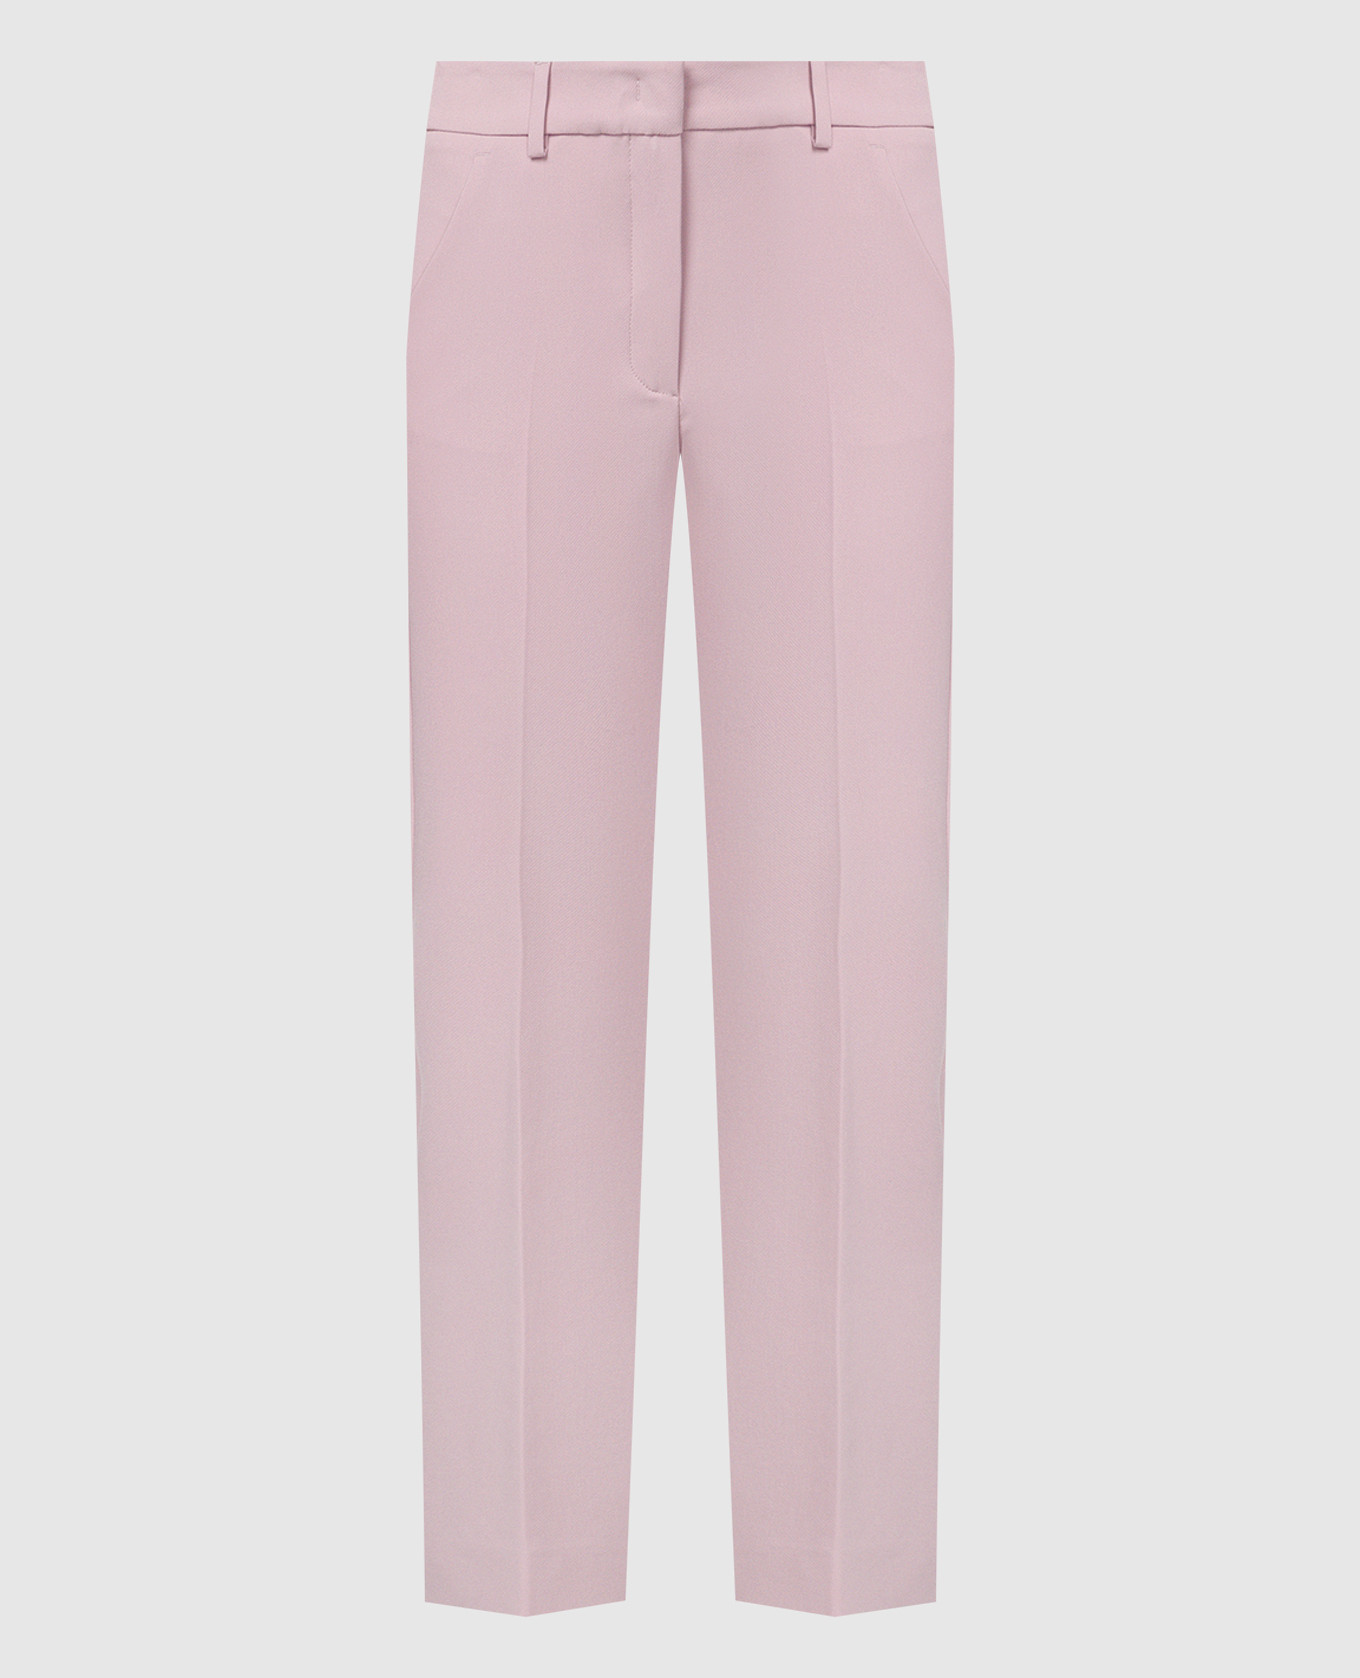 RANA pink pants